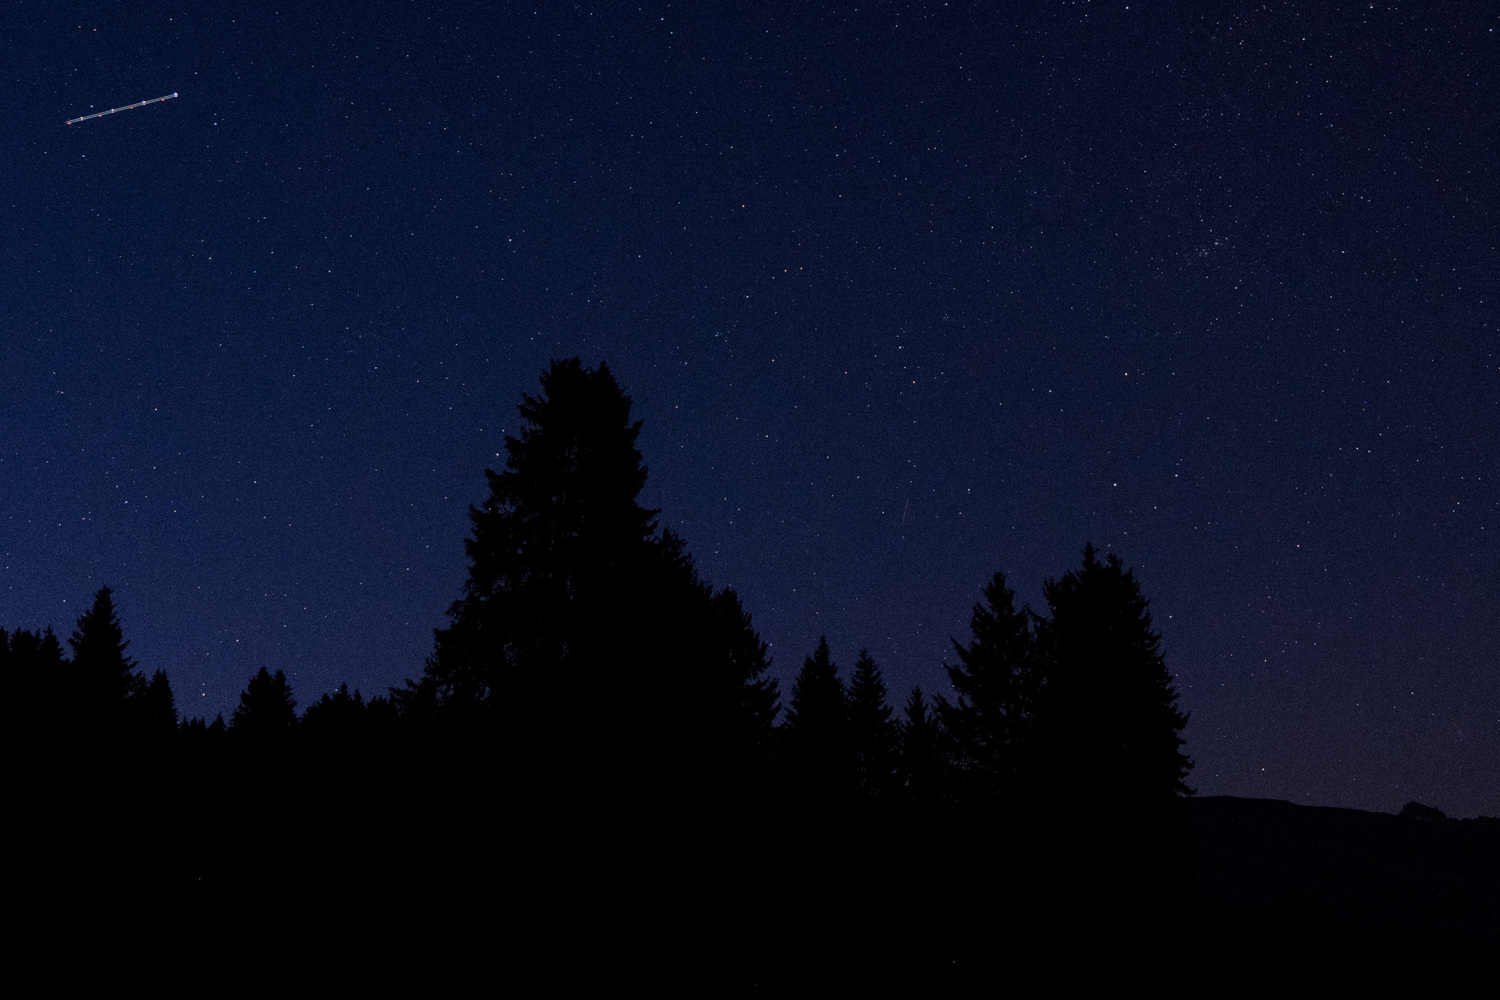 Fotografie des Nachthimmels in den Bergen. Aufnahmeort Falera in den Schweizer Alpen. Gut zu sehen sind Spuren der Positions- und Blitzlichter eines Flugzeugs.